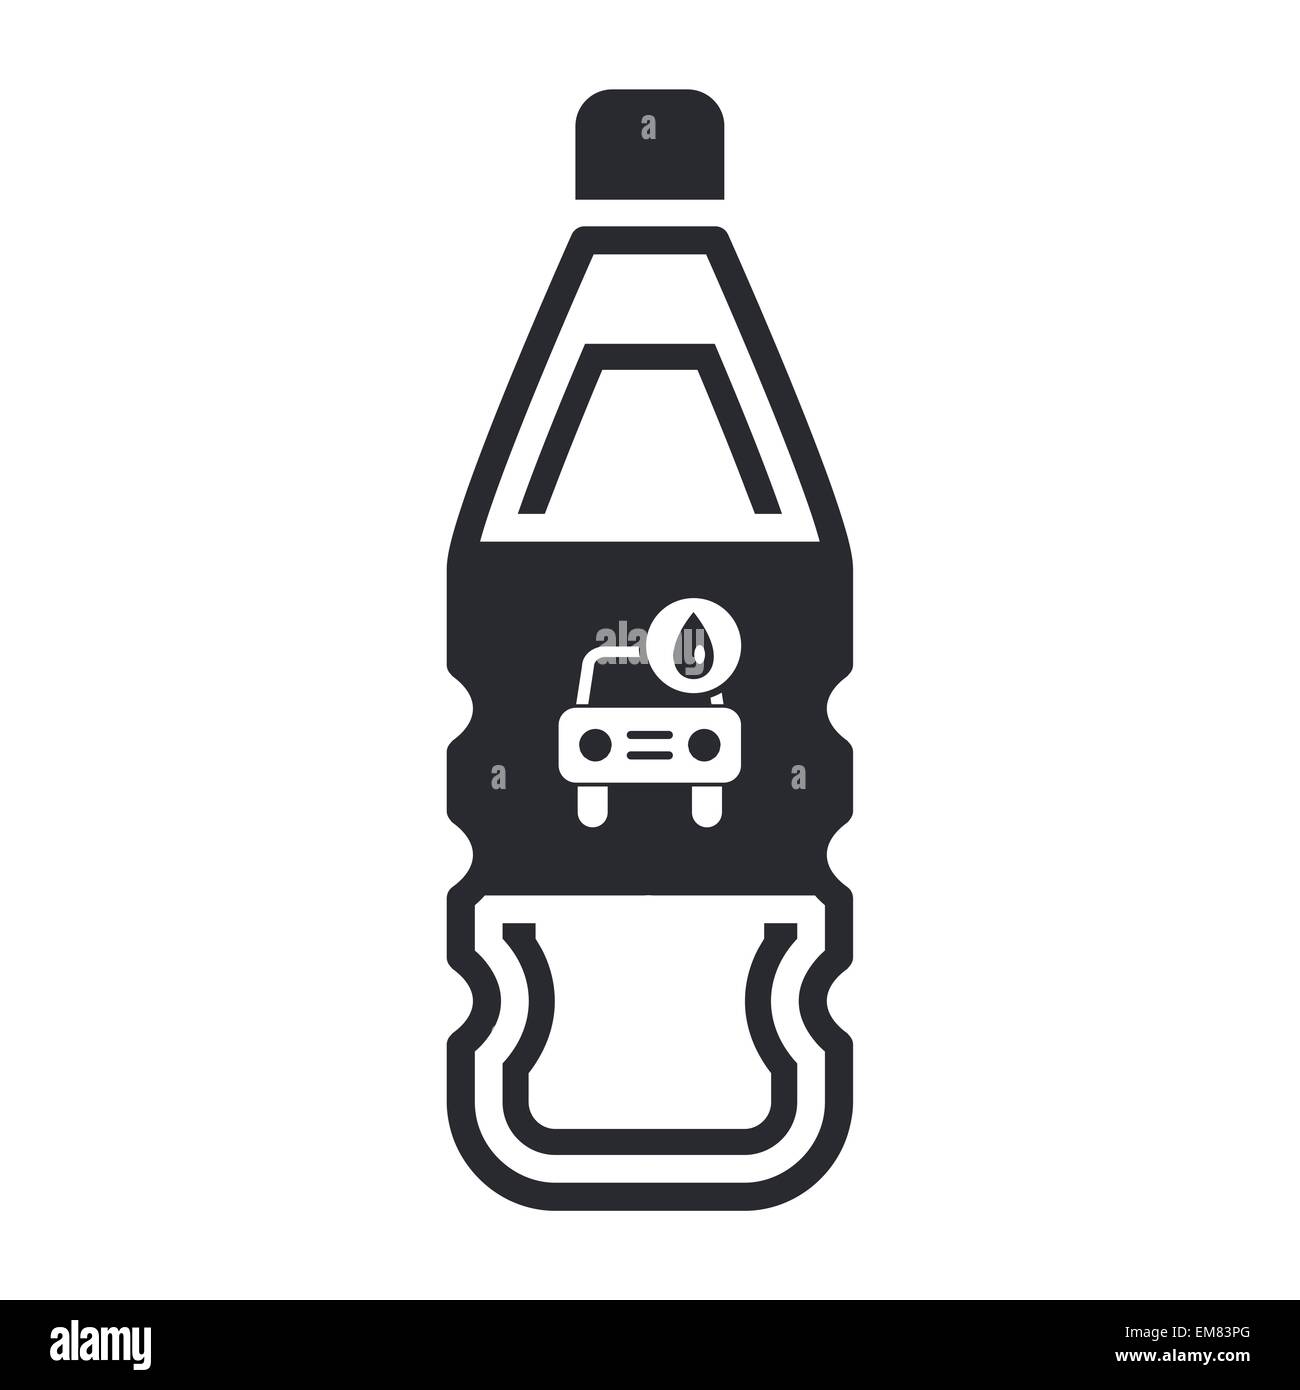 Vector illustration of car wash detergent bottle Stock Vector